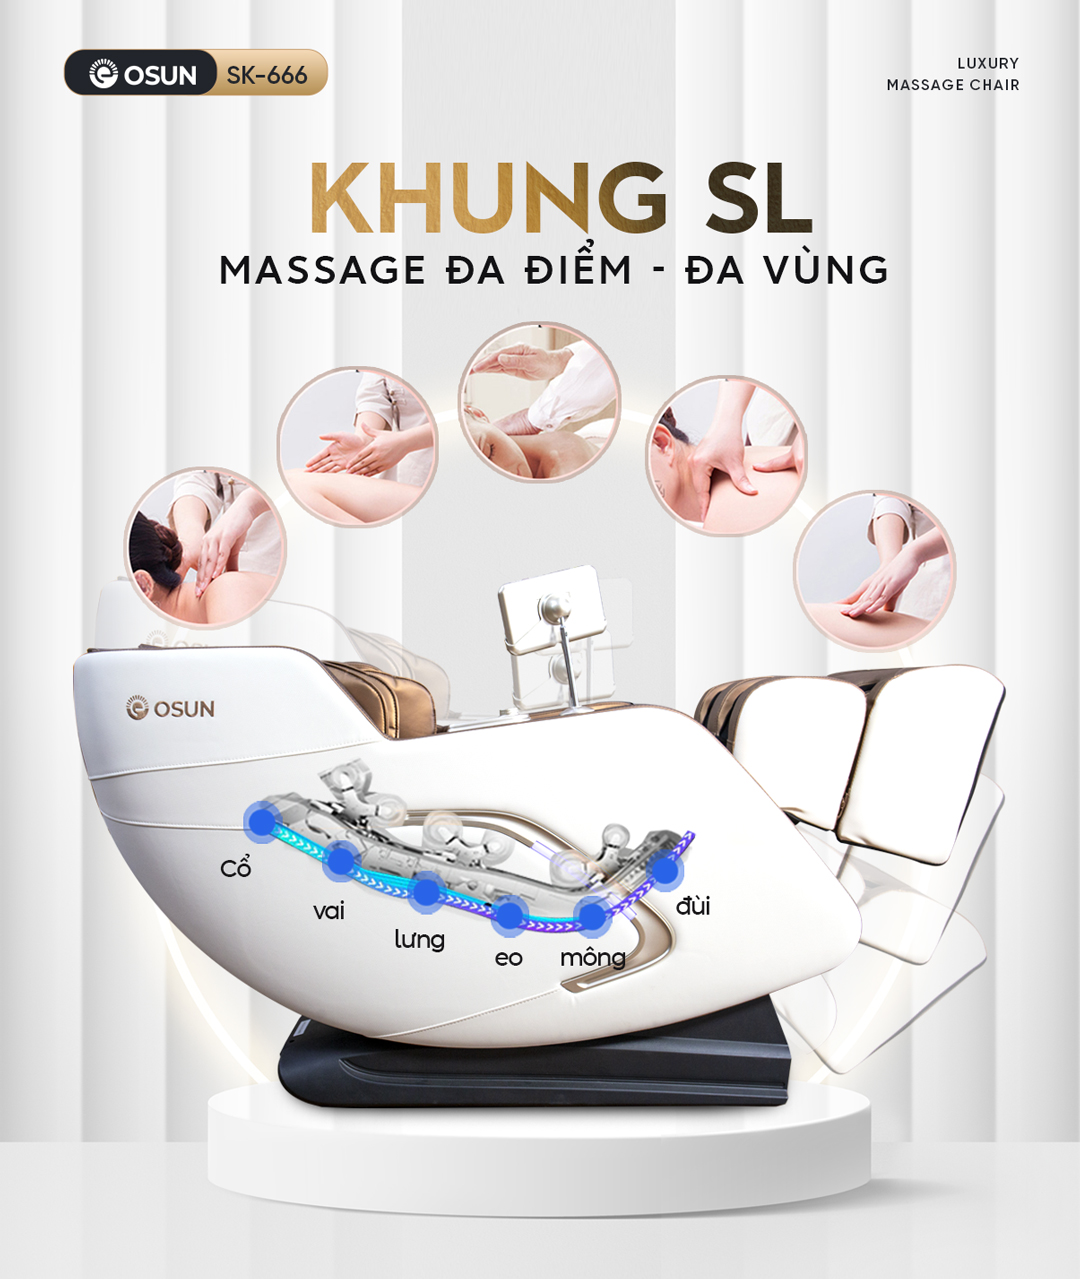 Ghế OSUN SK-666 khung SL massage đa điểm đa vùng